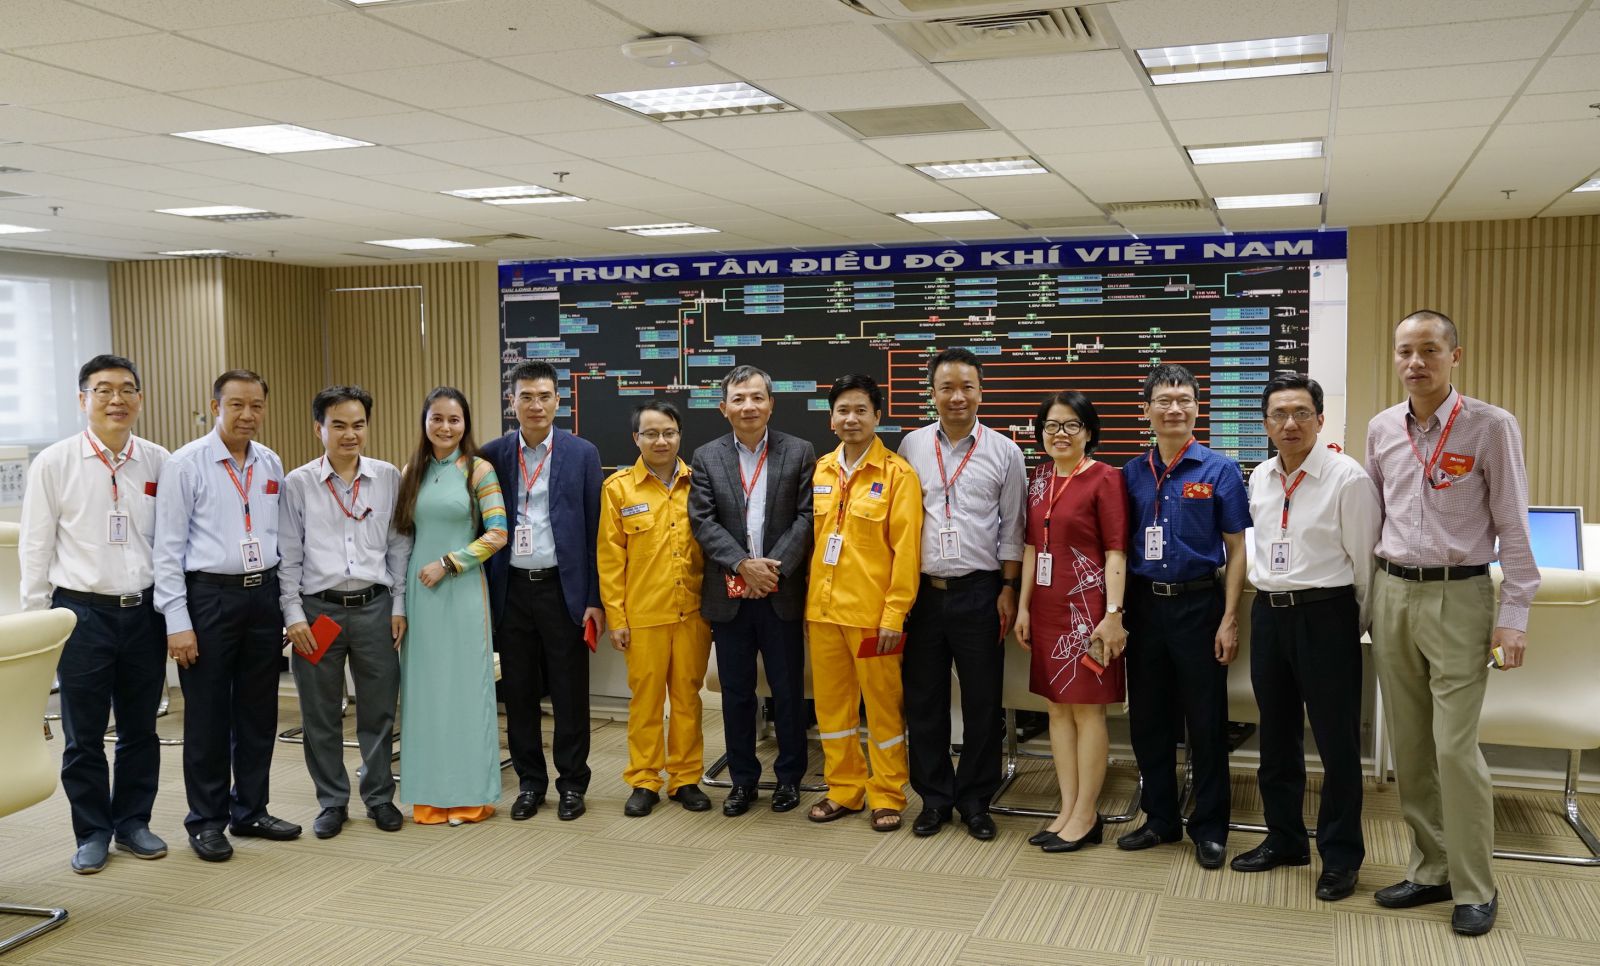 Ban Lãnh đạo và Công đoàn PV GAS thăm cán bộ trực tại Trung tâm Điều độ khí Việt Nam